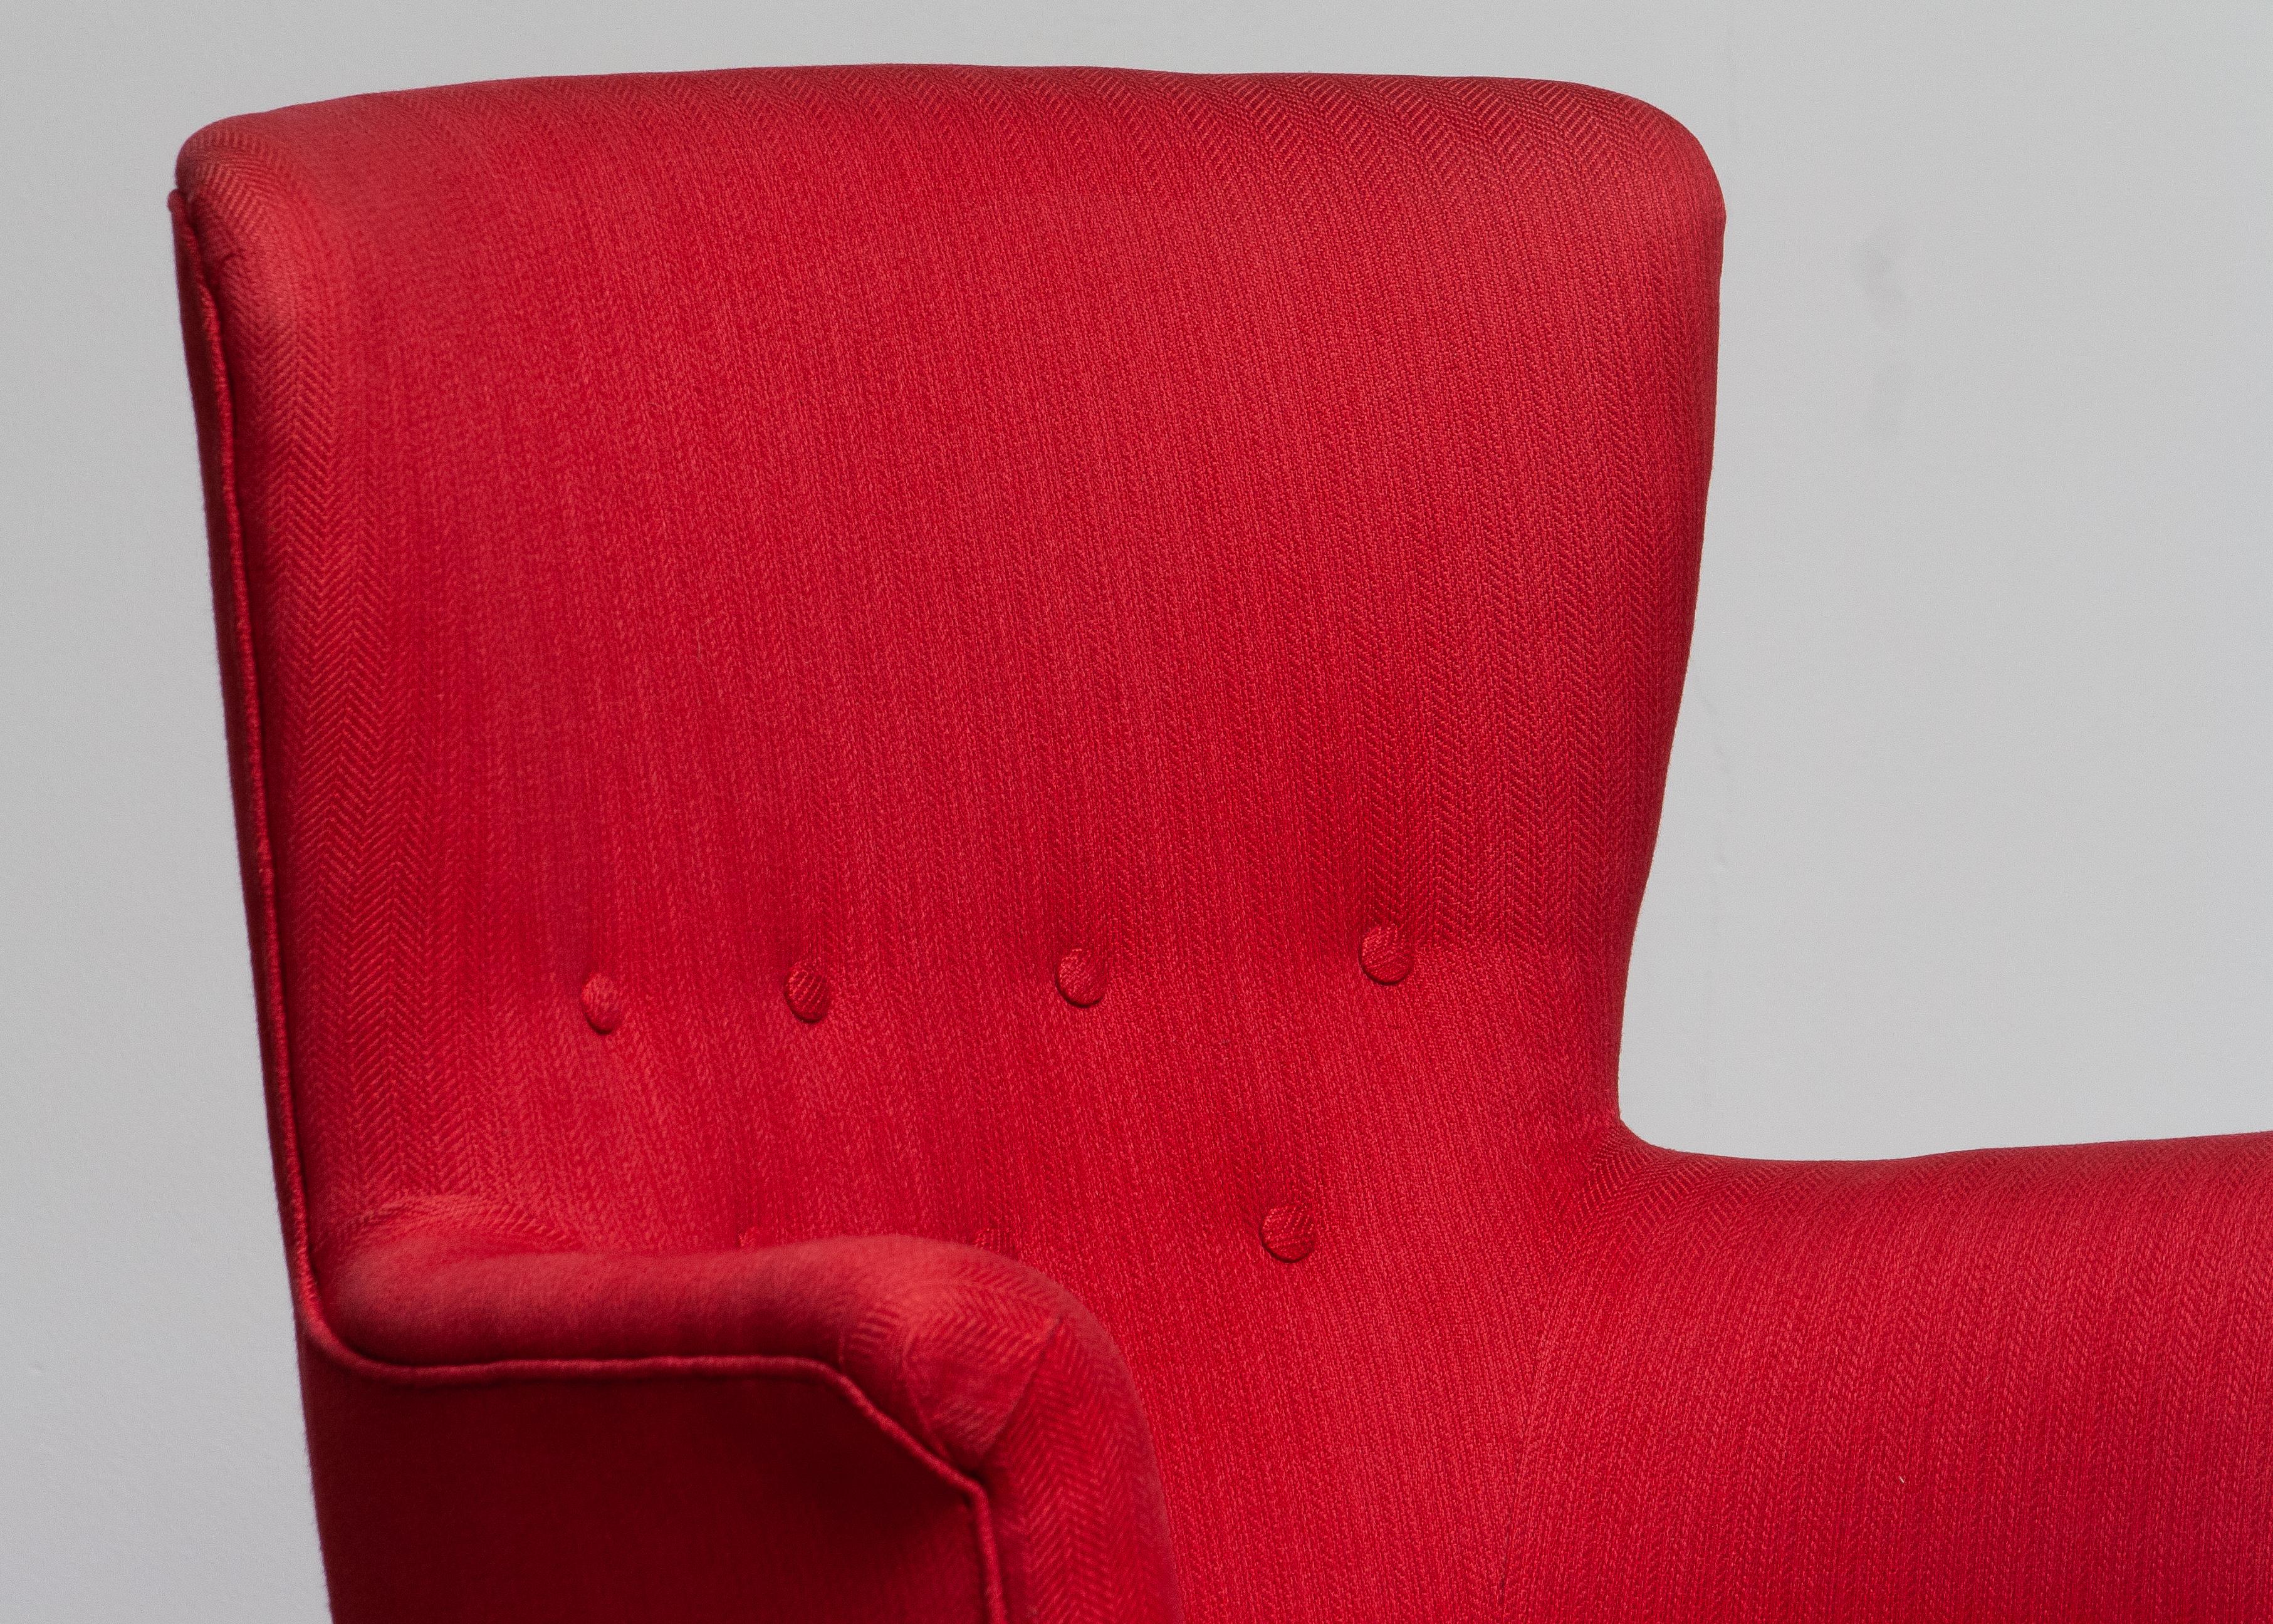 Mid-Century Modern 1940s, Fuchsia Easy / Lounge Chair by Carl Malmsten for Oh Sjogren, Sweden